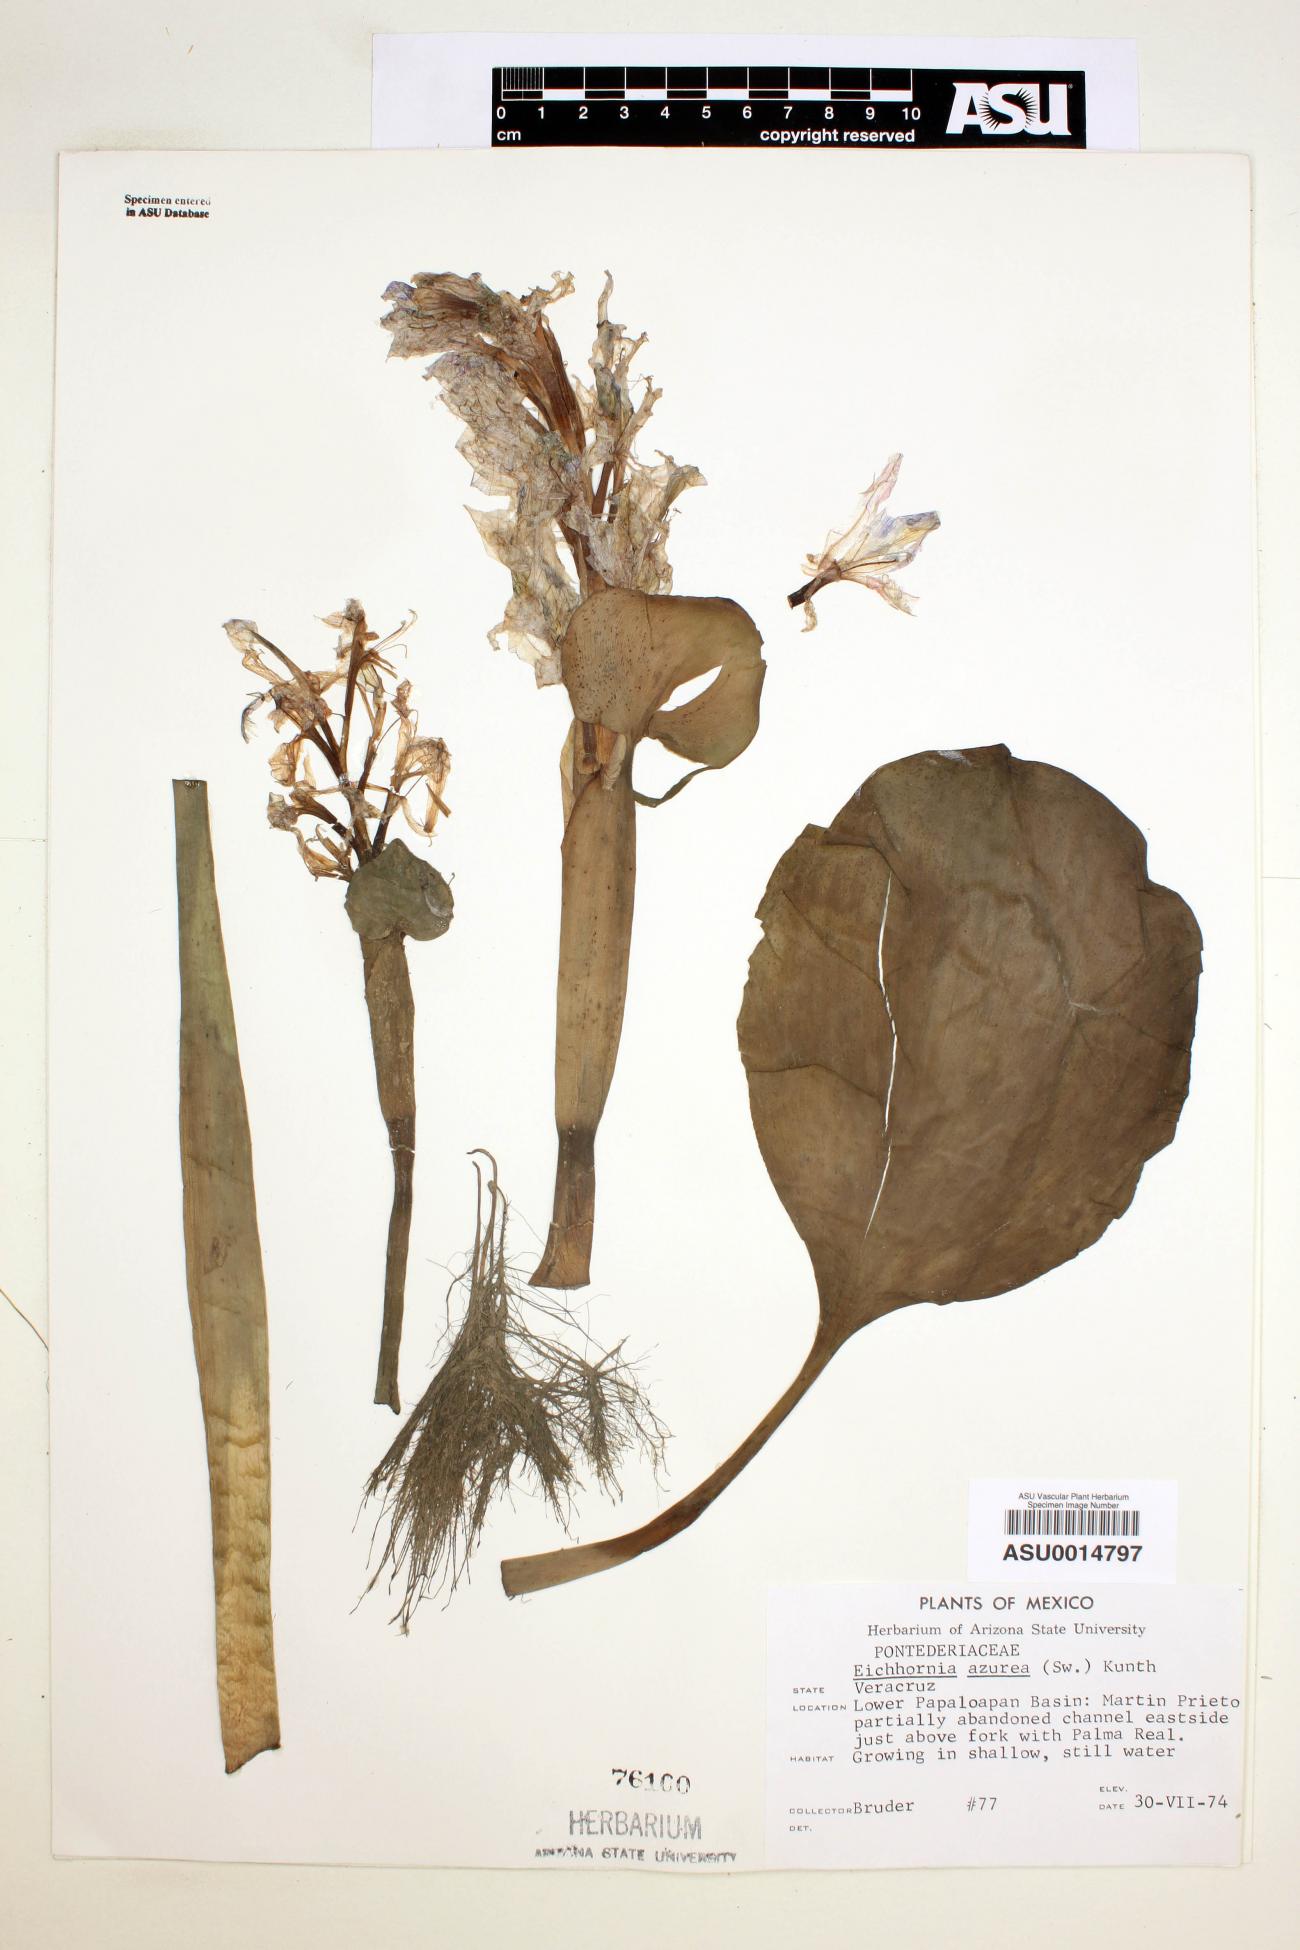 Eichhornia image